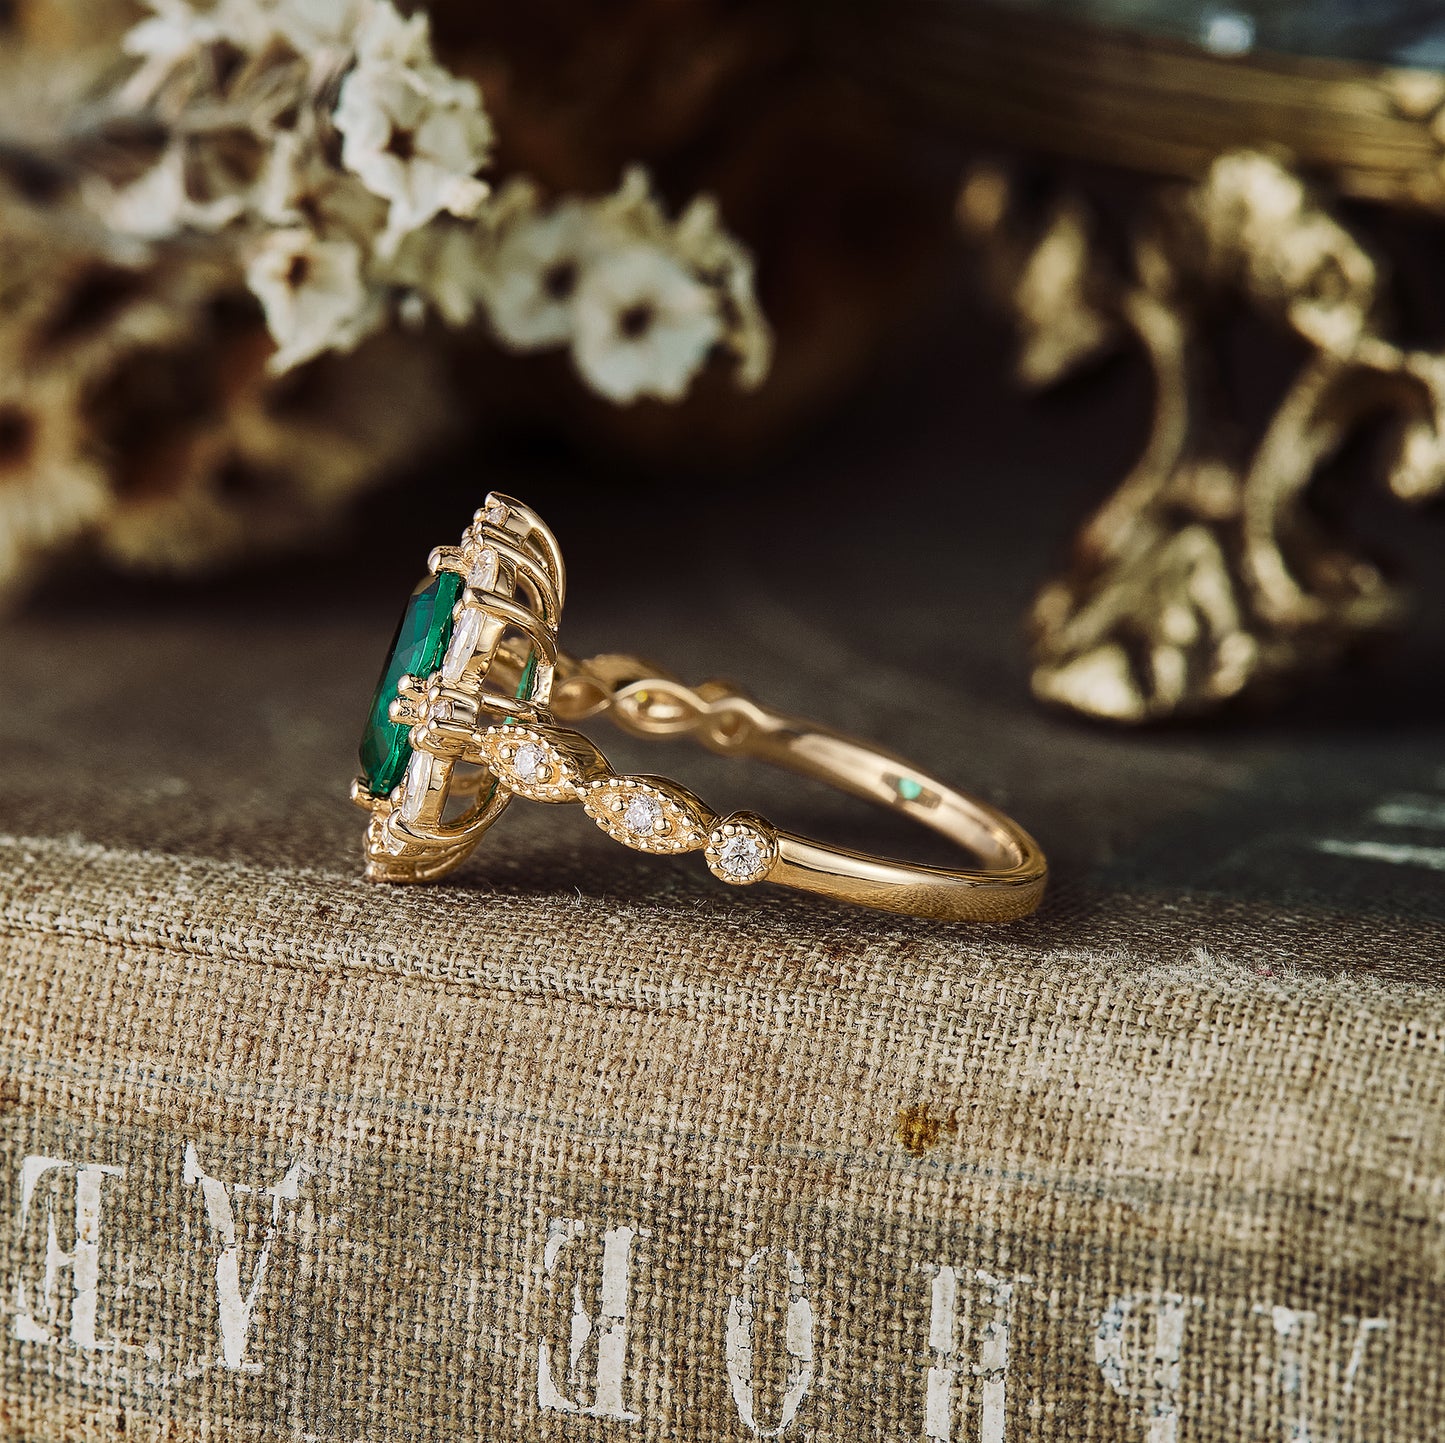 GemsMagic  Emerald Halo Engagement Ring